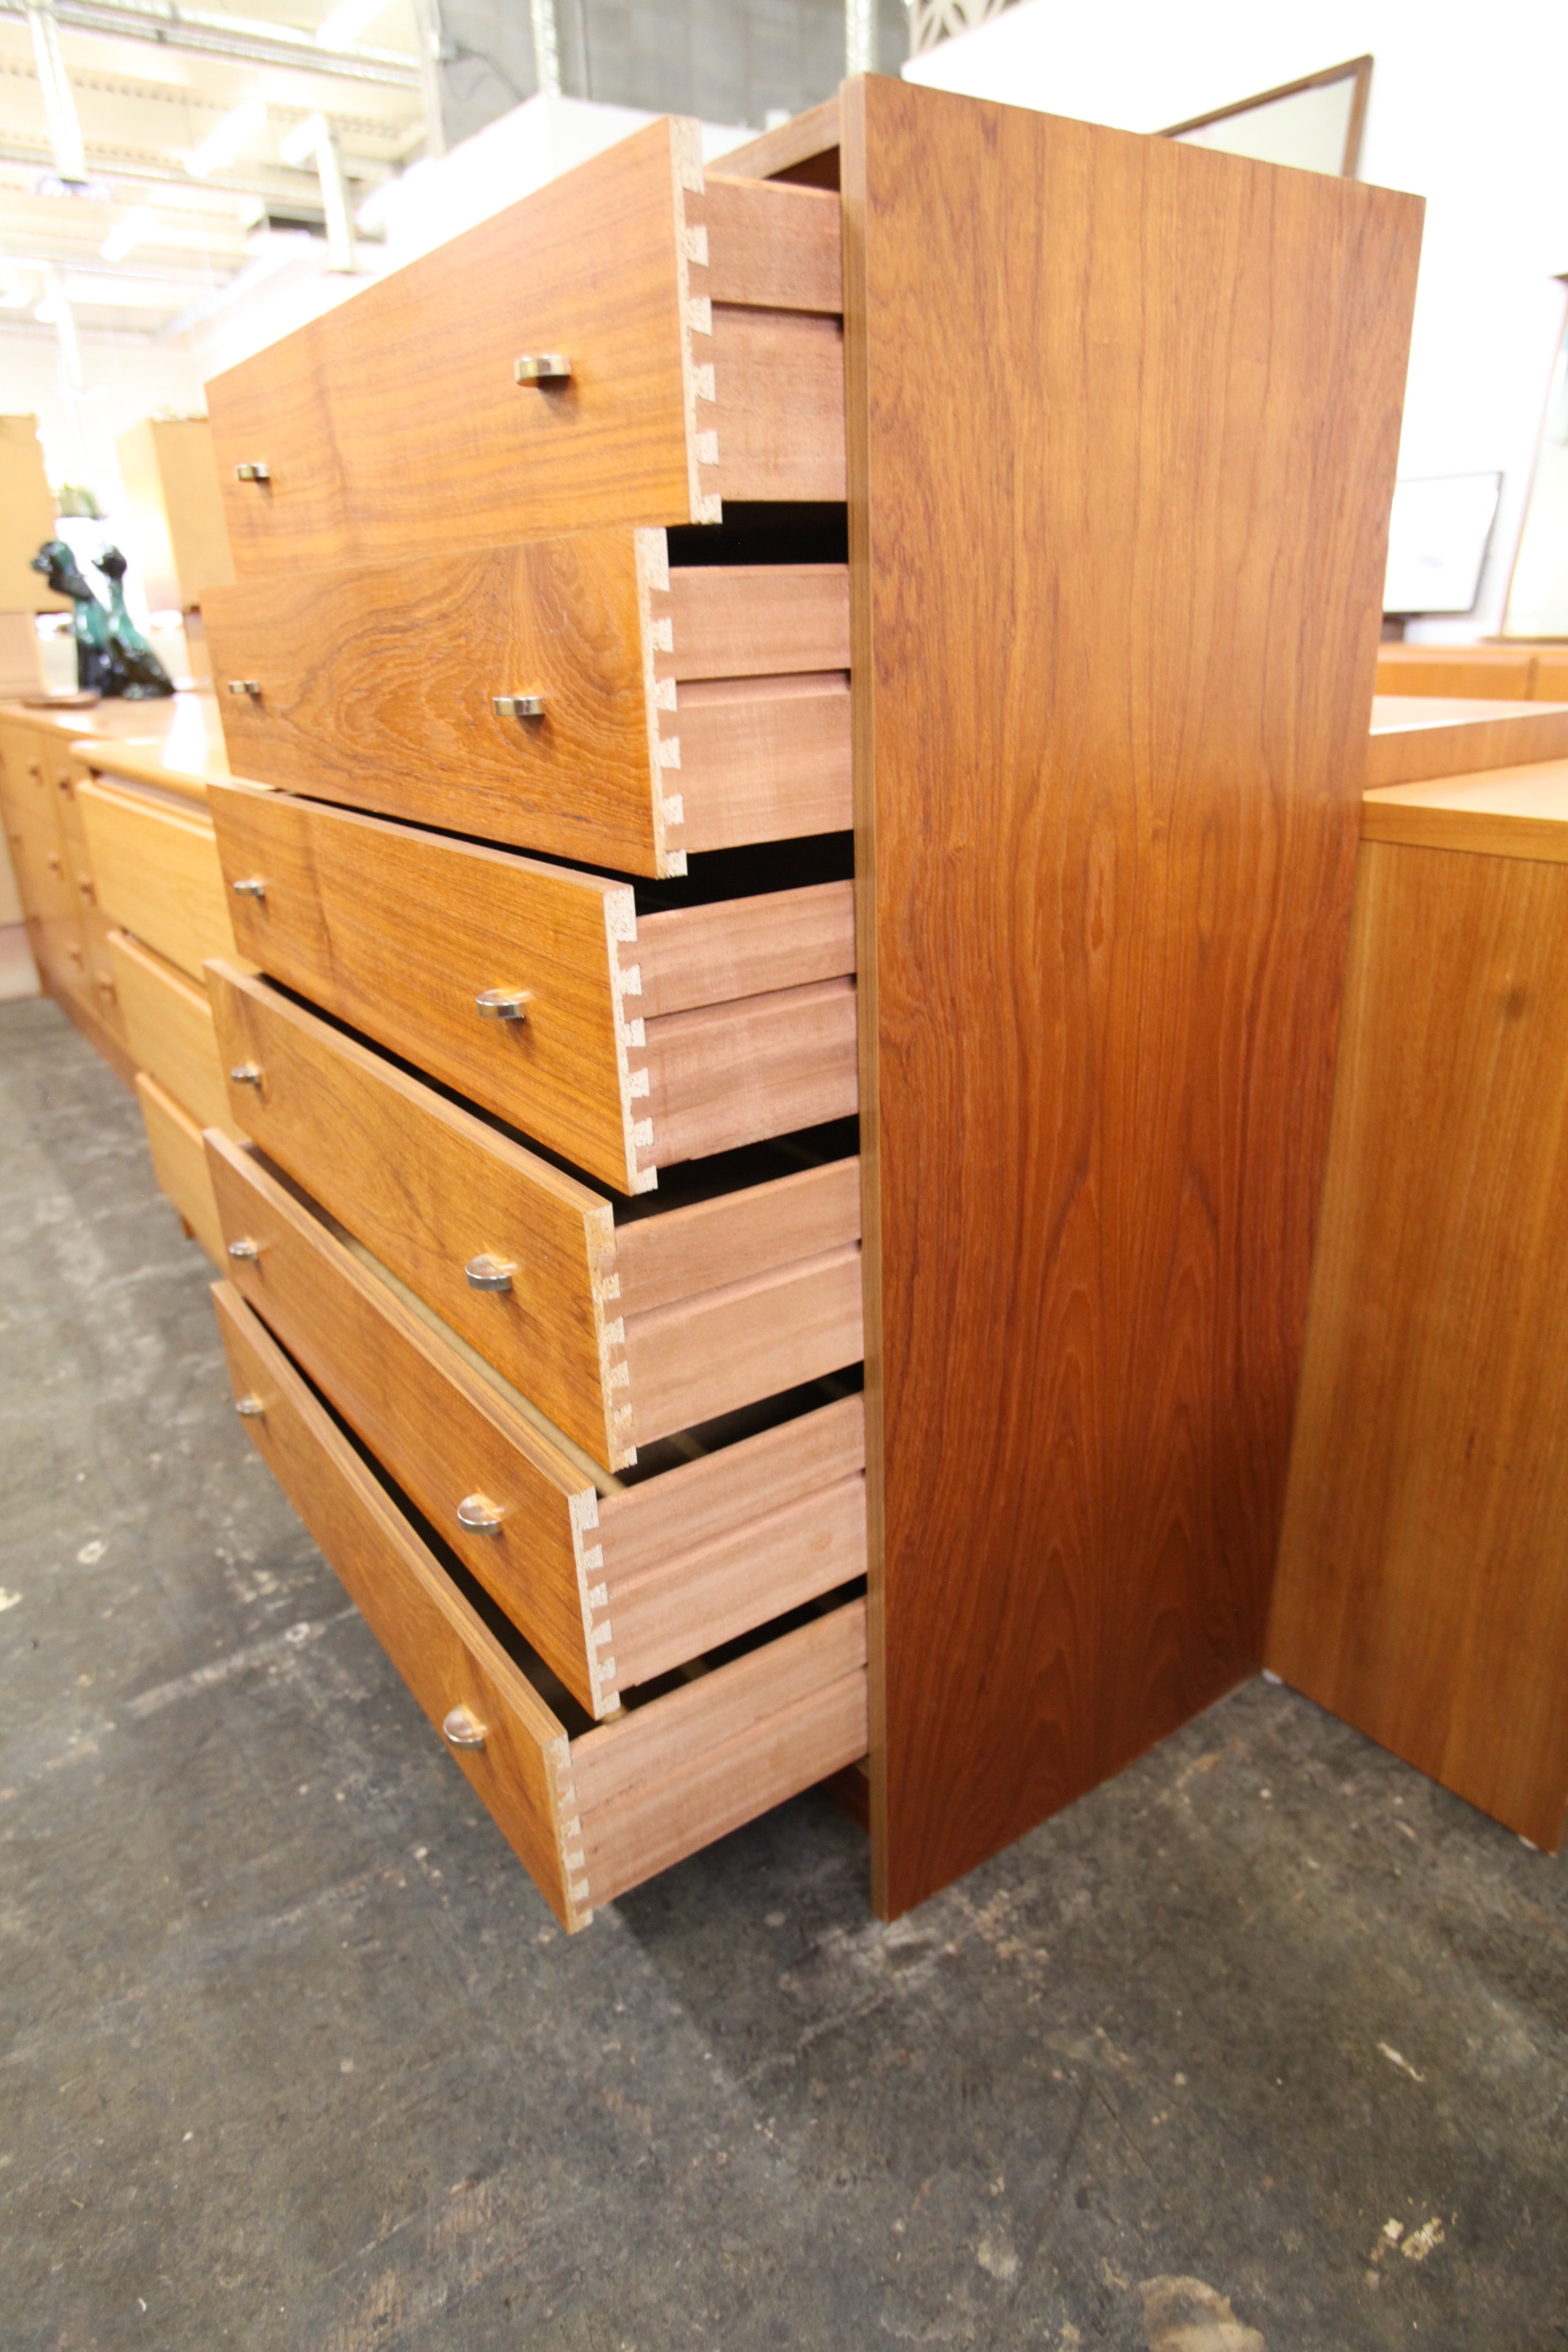 Vintage Teak Tallboy 6 Drawer Dresser (30"W x 16.25"D x 42"H)